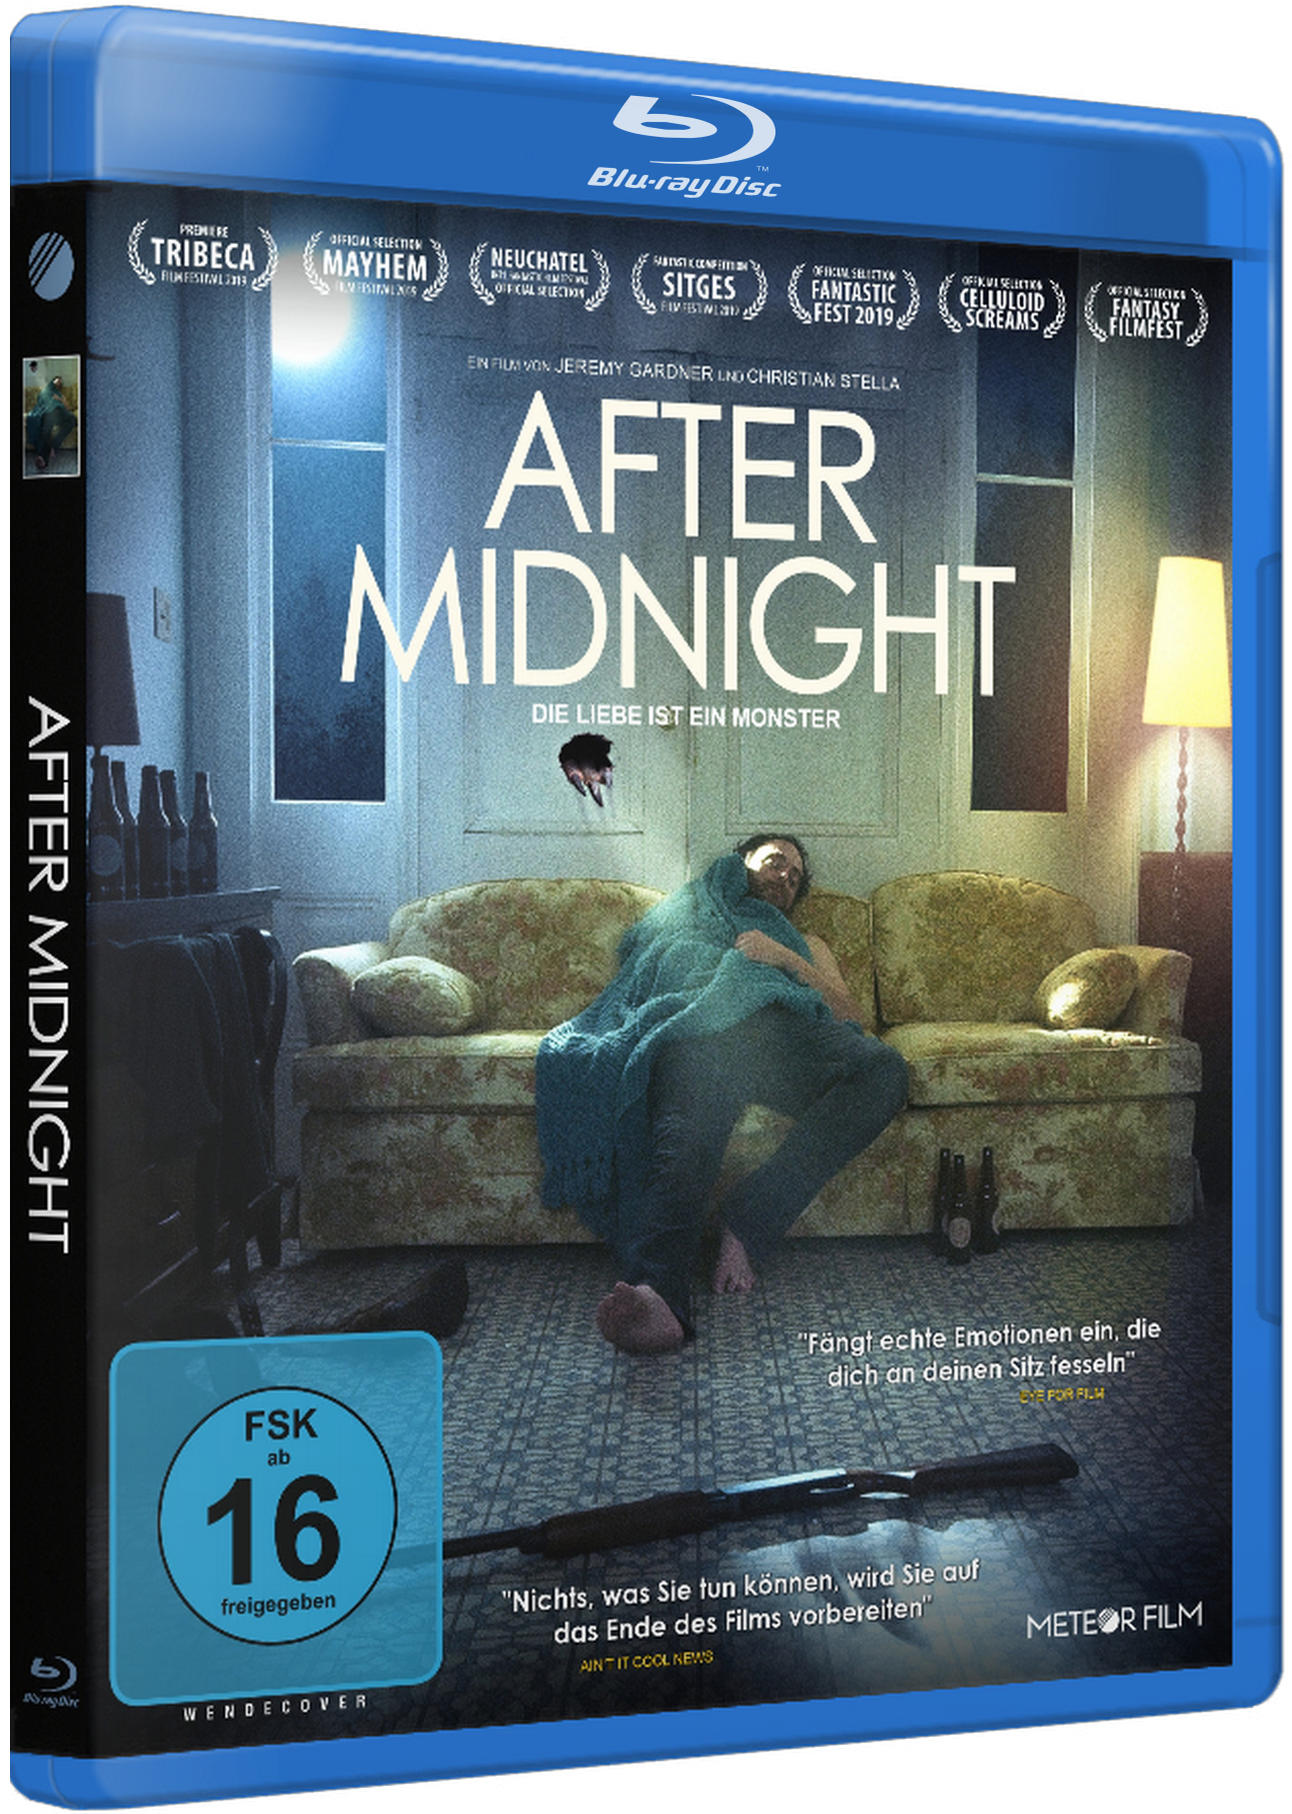 ist Monster Blu-ray - Die Midnight Liebe After ein